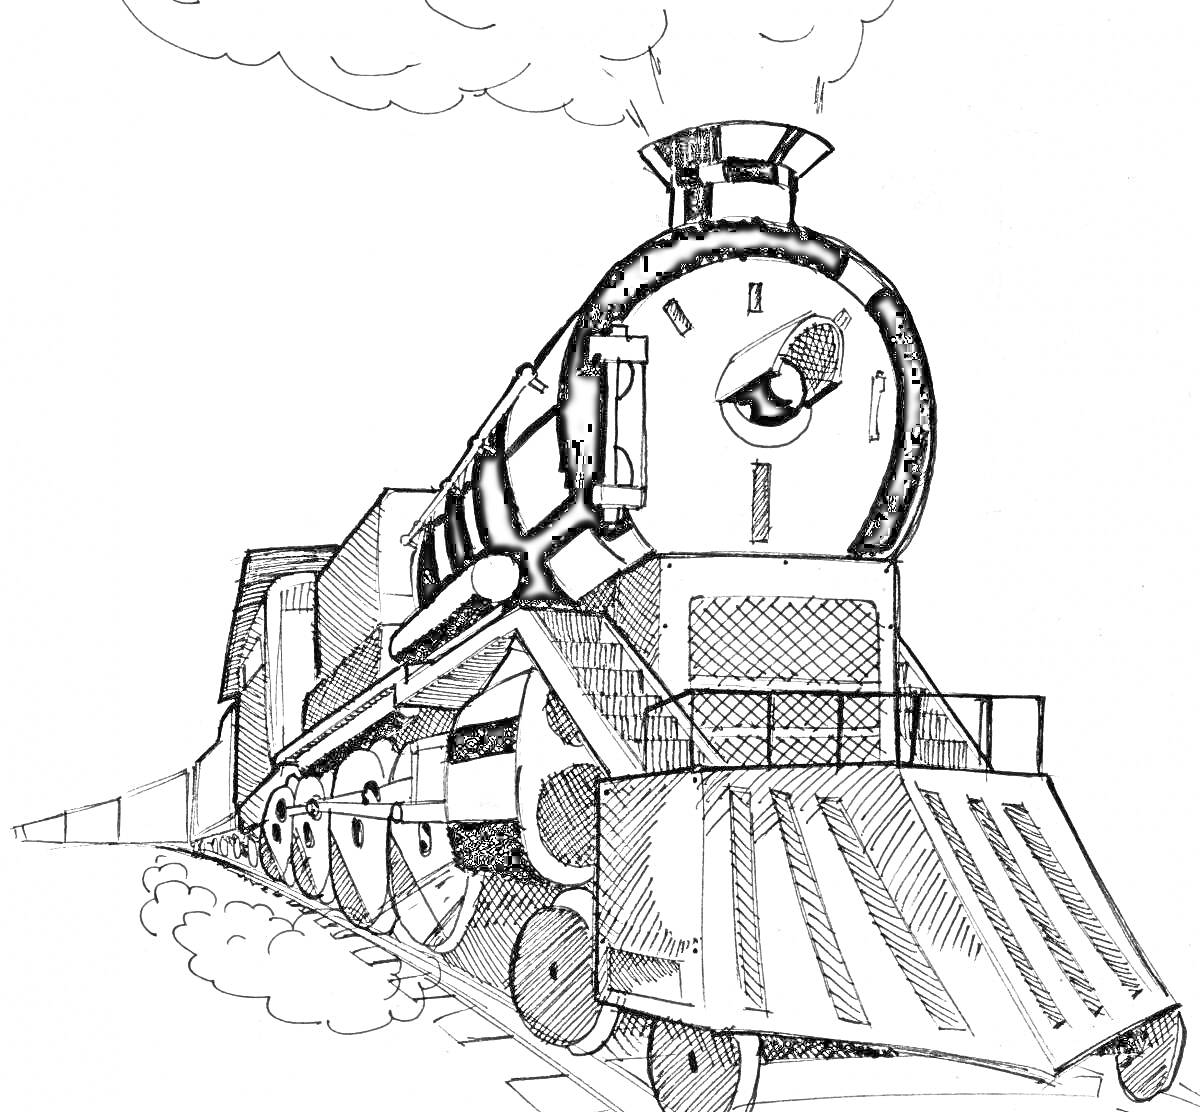 Раскраска Поезд-пожиратель с грозной мордой, дымком и крупными колесами на рельсовых путях.